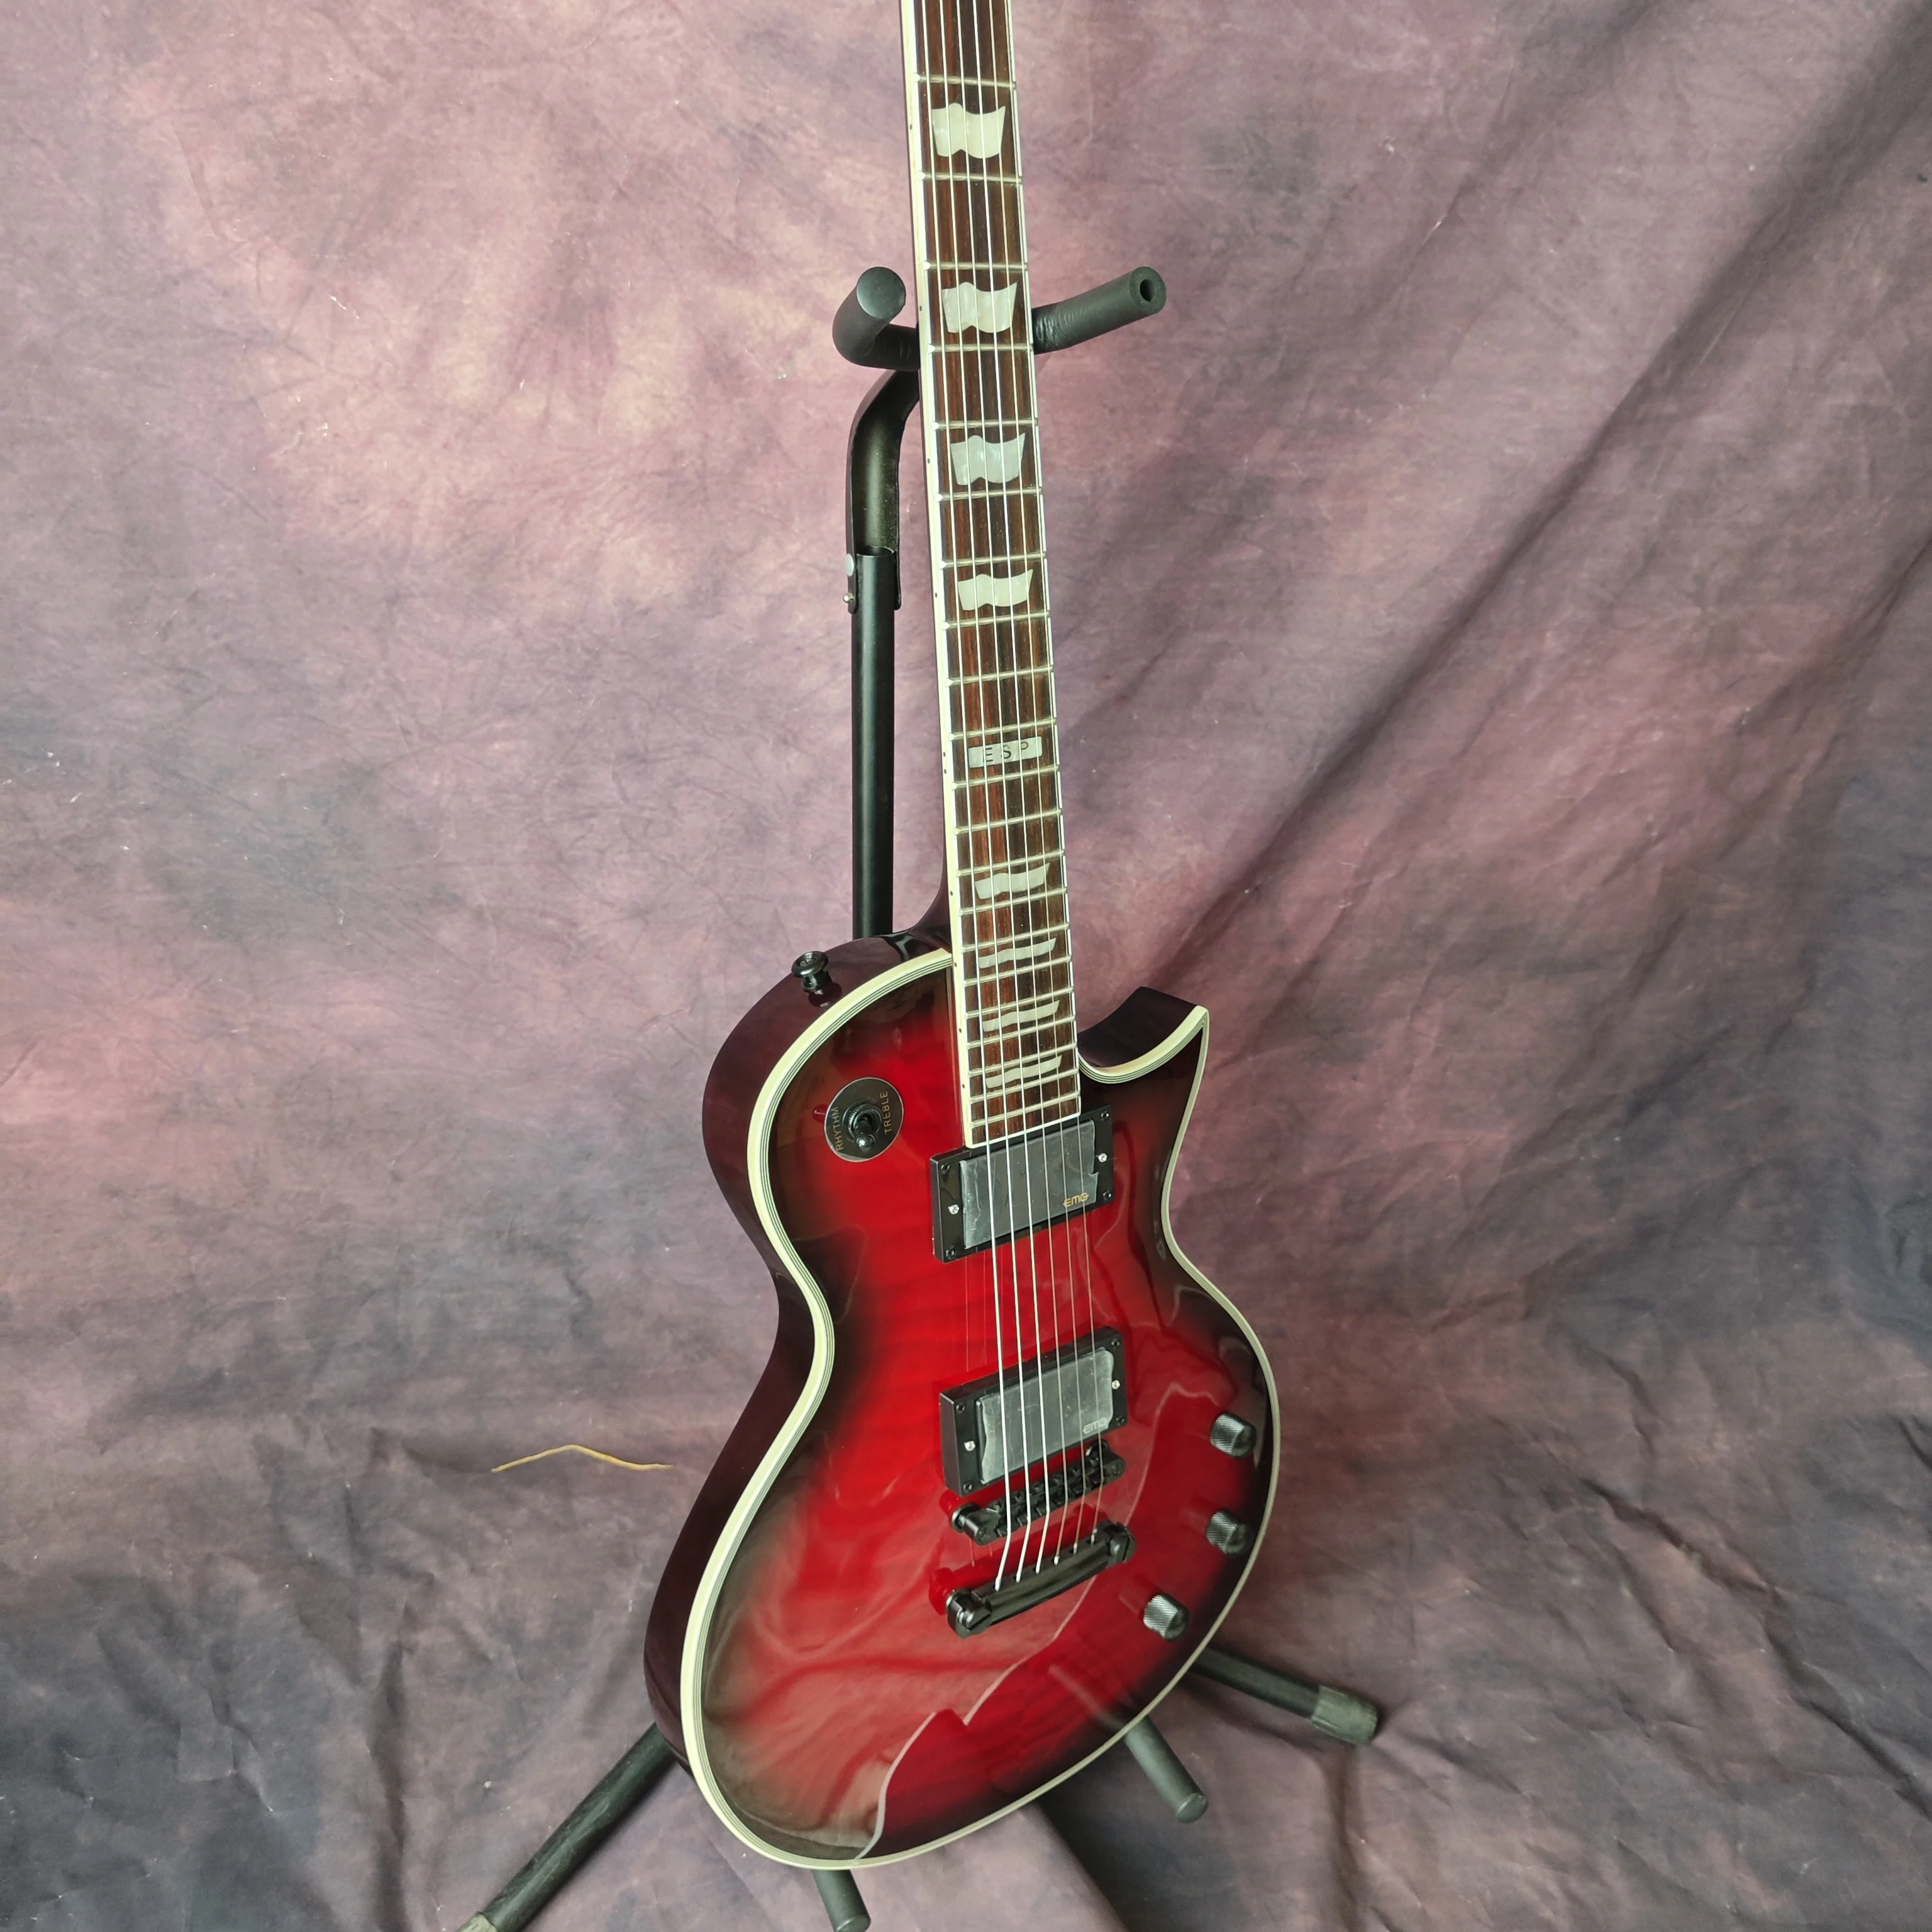 ESP vörös nagy virág elektromos gitár, bolyhos juhar top, barackvirág fa test, rózsa fa fingerboard, testreszabott gyári - 3